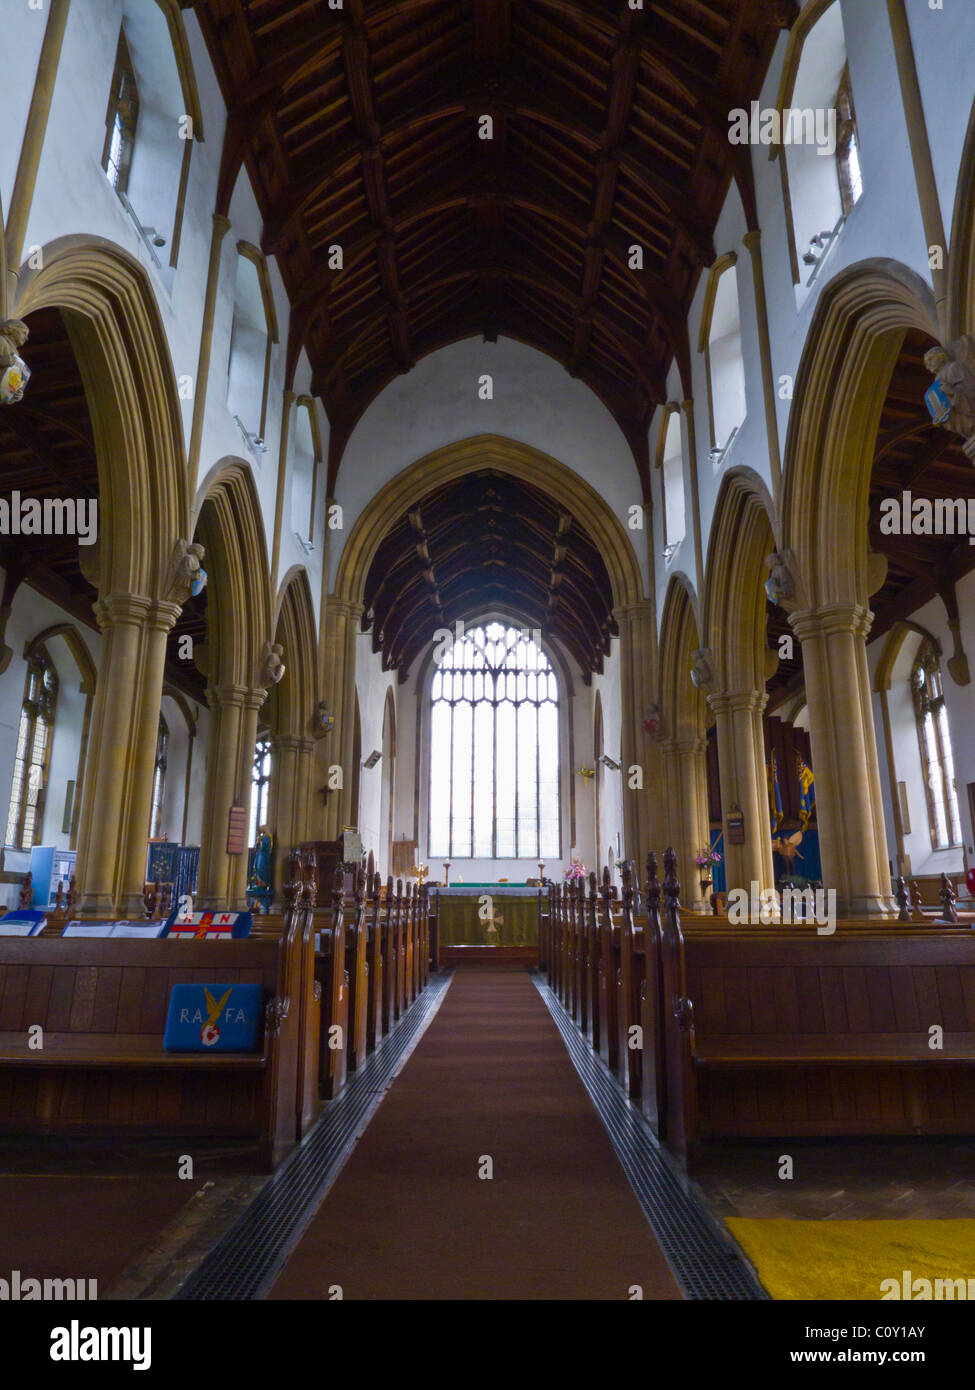 L'intérieur de l'église Saint Nicolas de Wells-next-the-Sea, Norfolk, Angleterre, Royaume-Uni. Banque D'Images